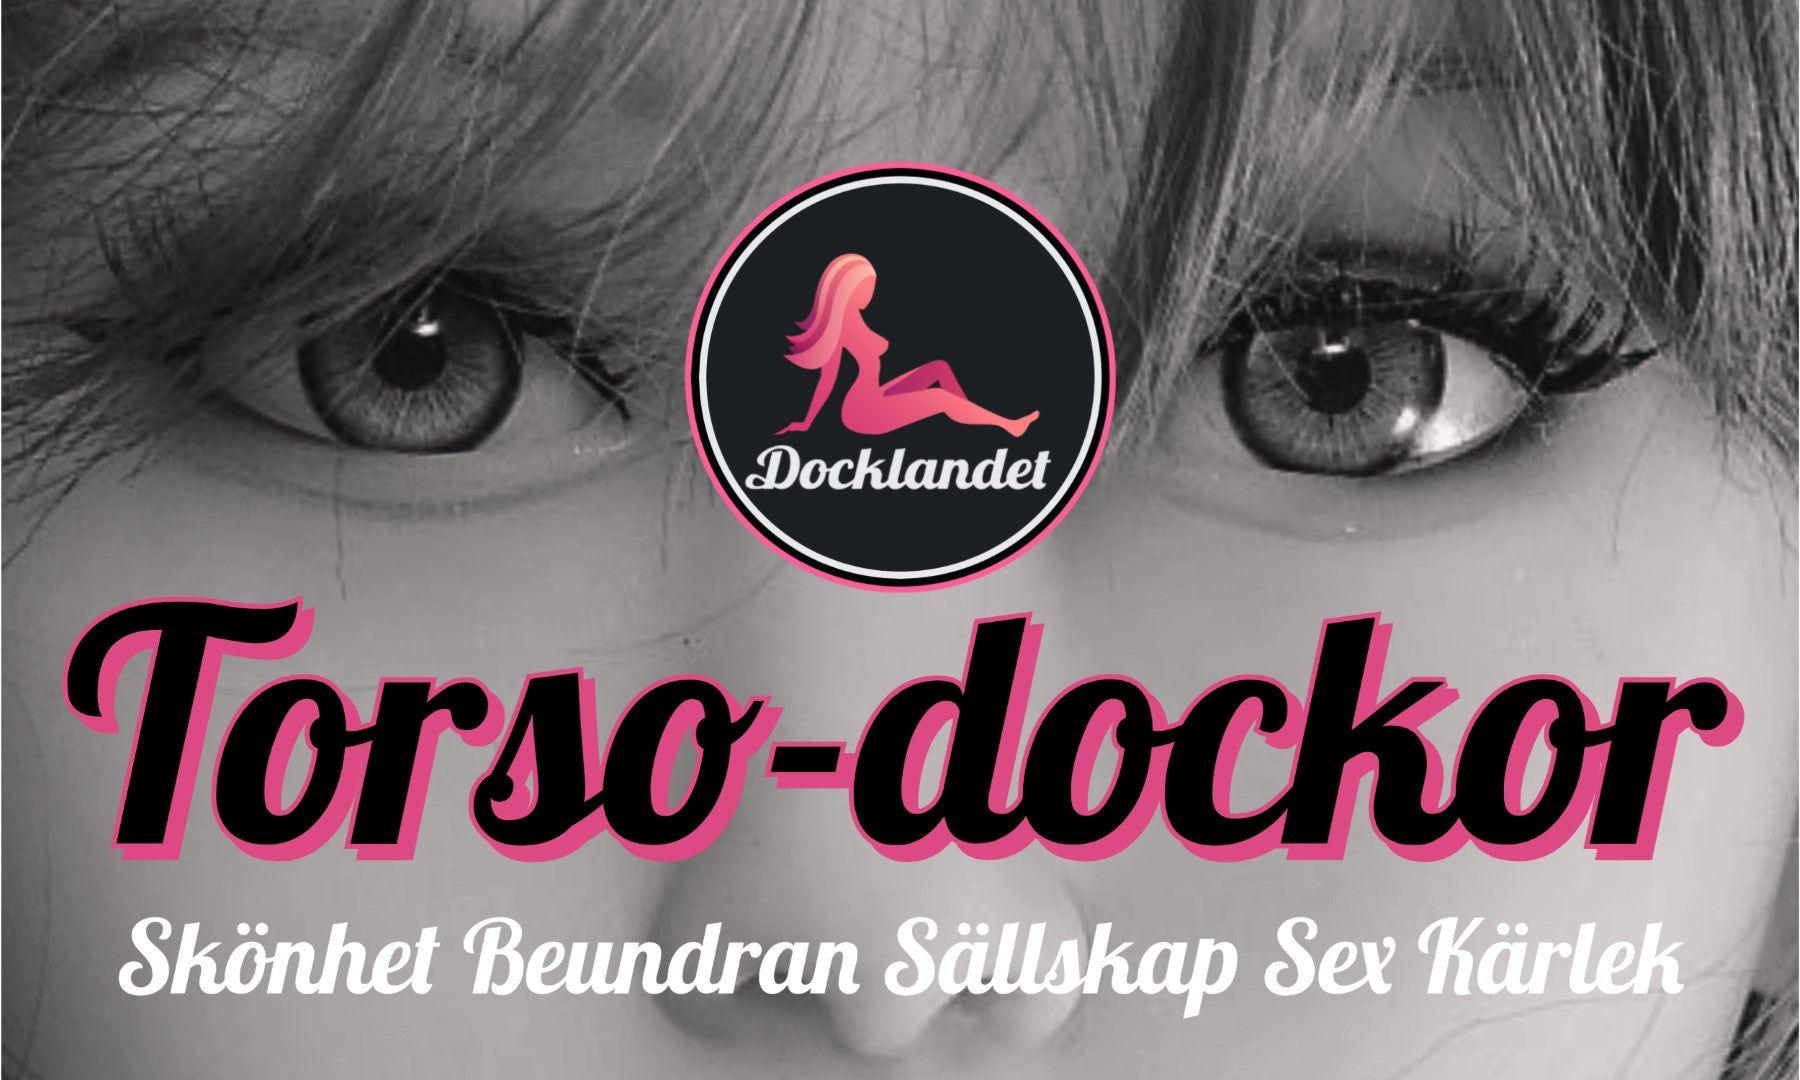 Torso-sexdockor hos Docklandet. Vi har flera torso-sexdockor i lager och många andra fina sexdockor! Välkommen!